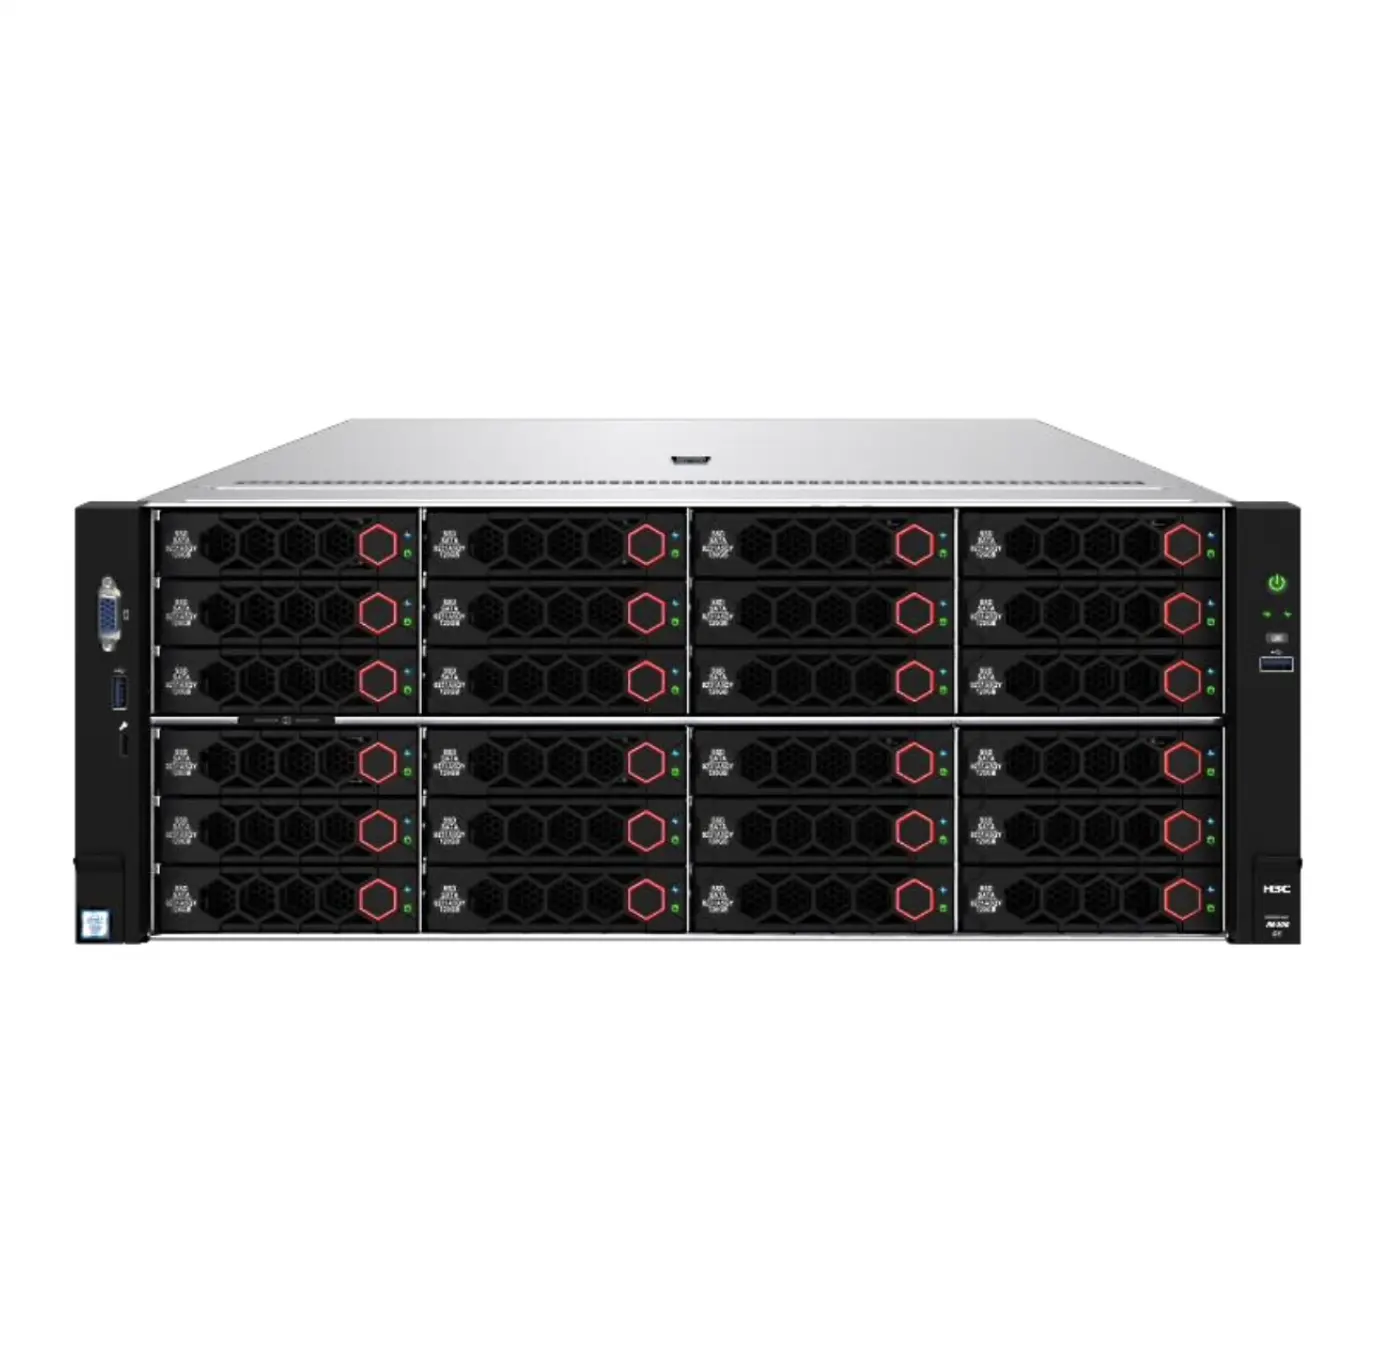 H3C UniServer R5300 G5 4U iks сервер GPU R5300G5 домашний помощник сервера